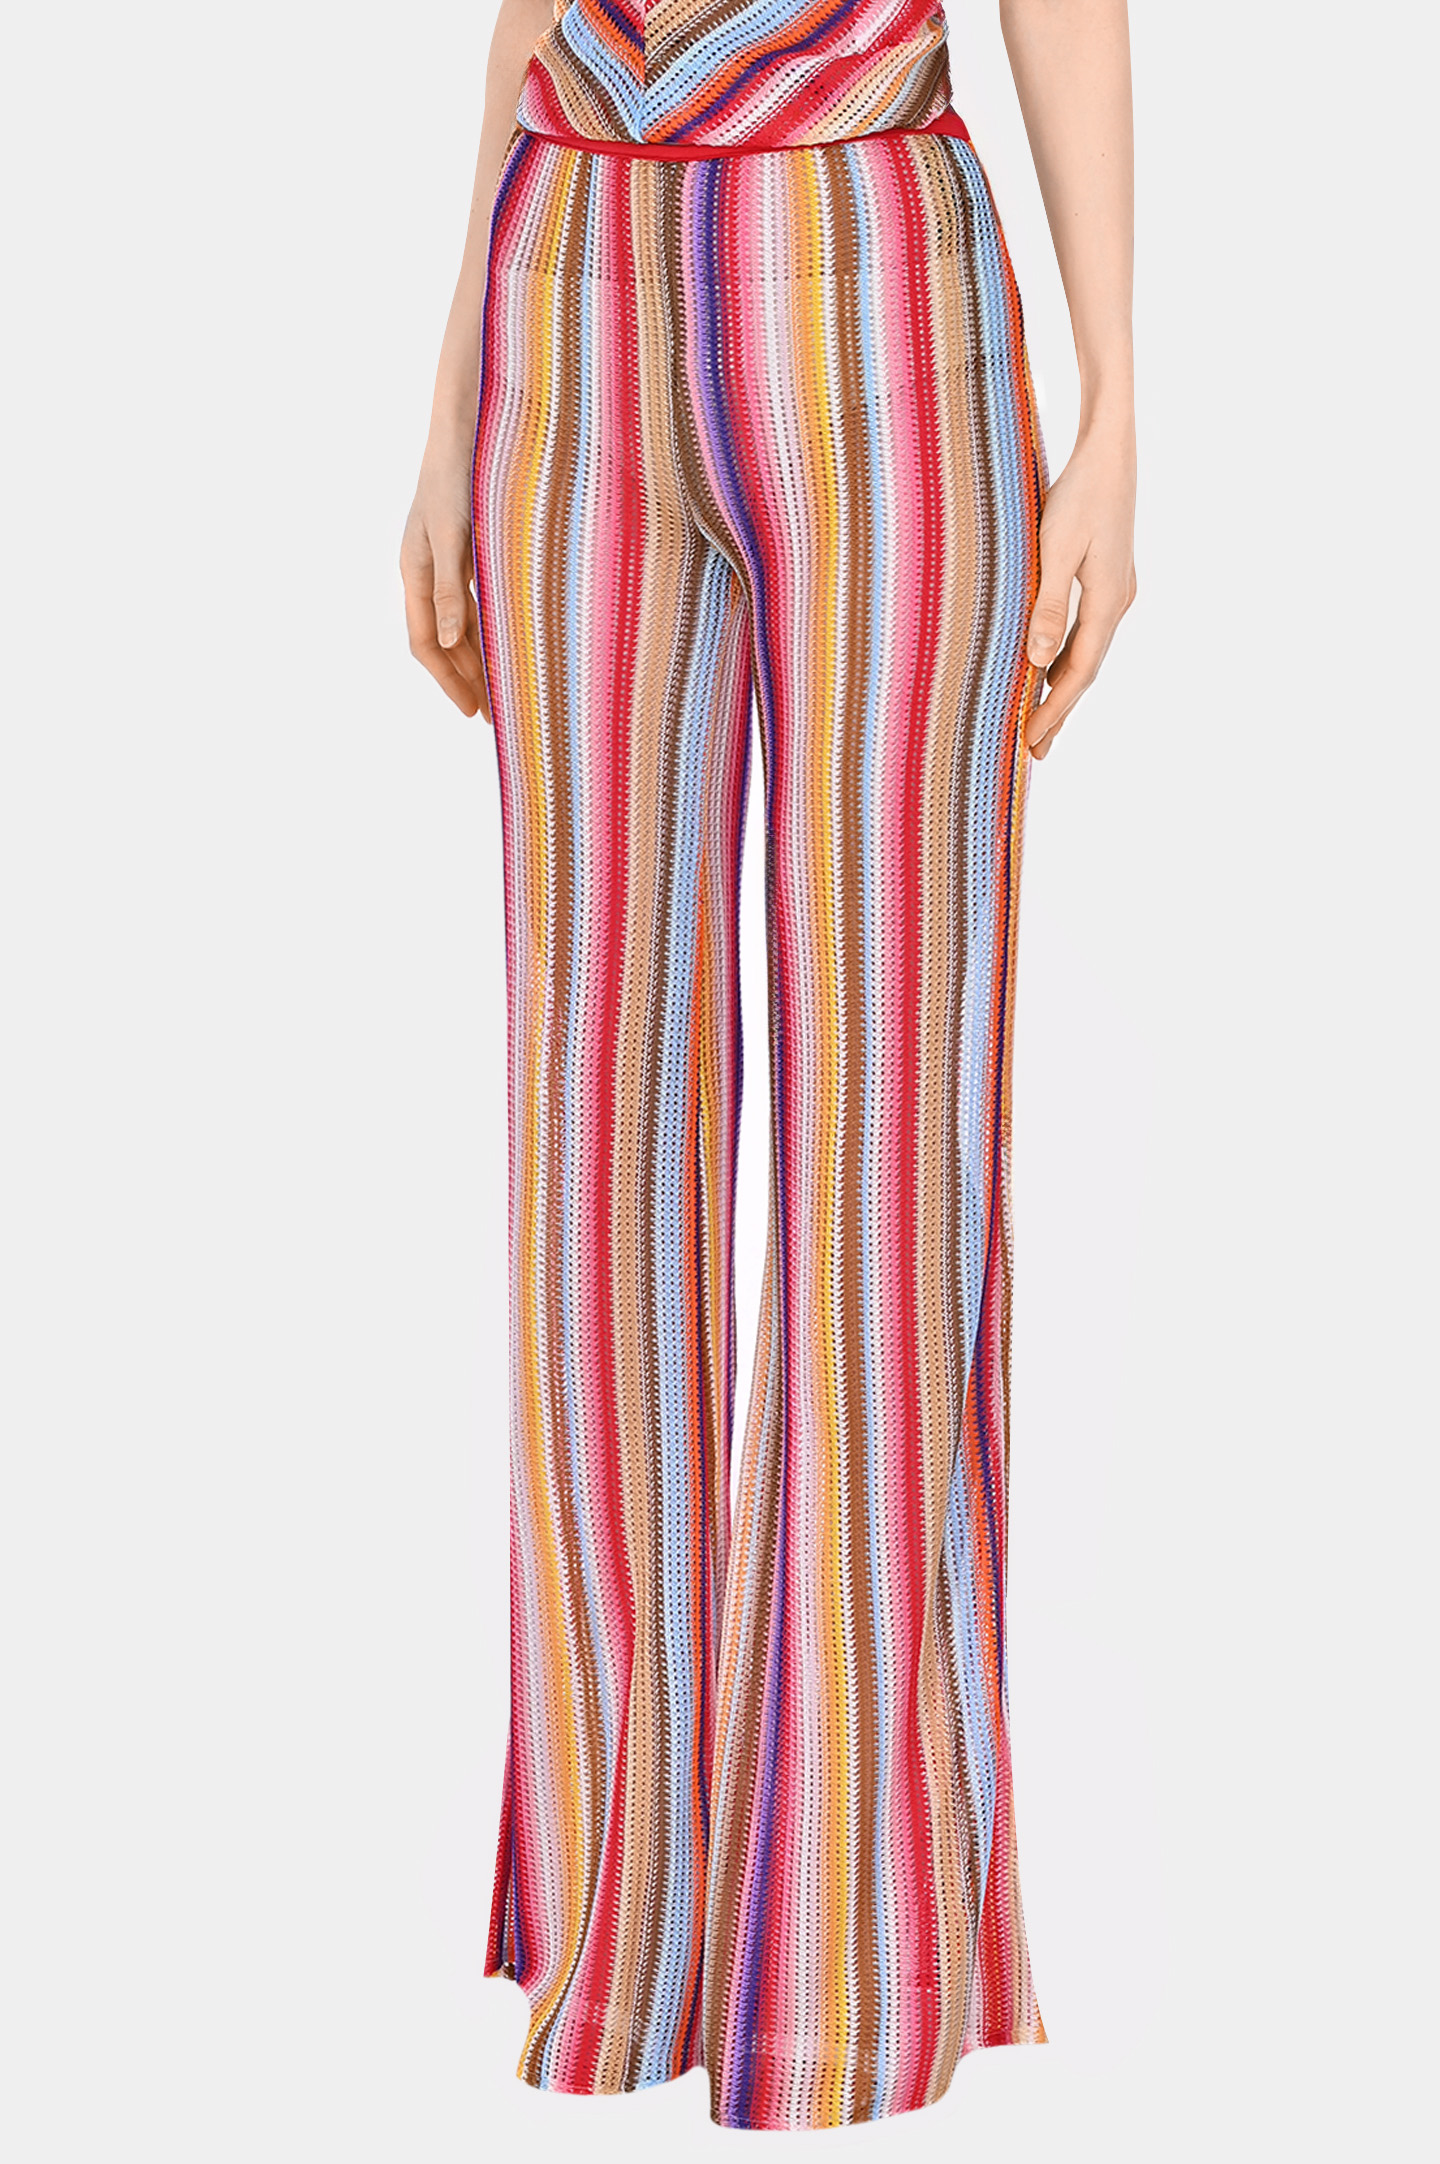 Полупрозрачные брюки MISSONI MS24SI00-BR00UW, цвет: Разноцветный, Женский